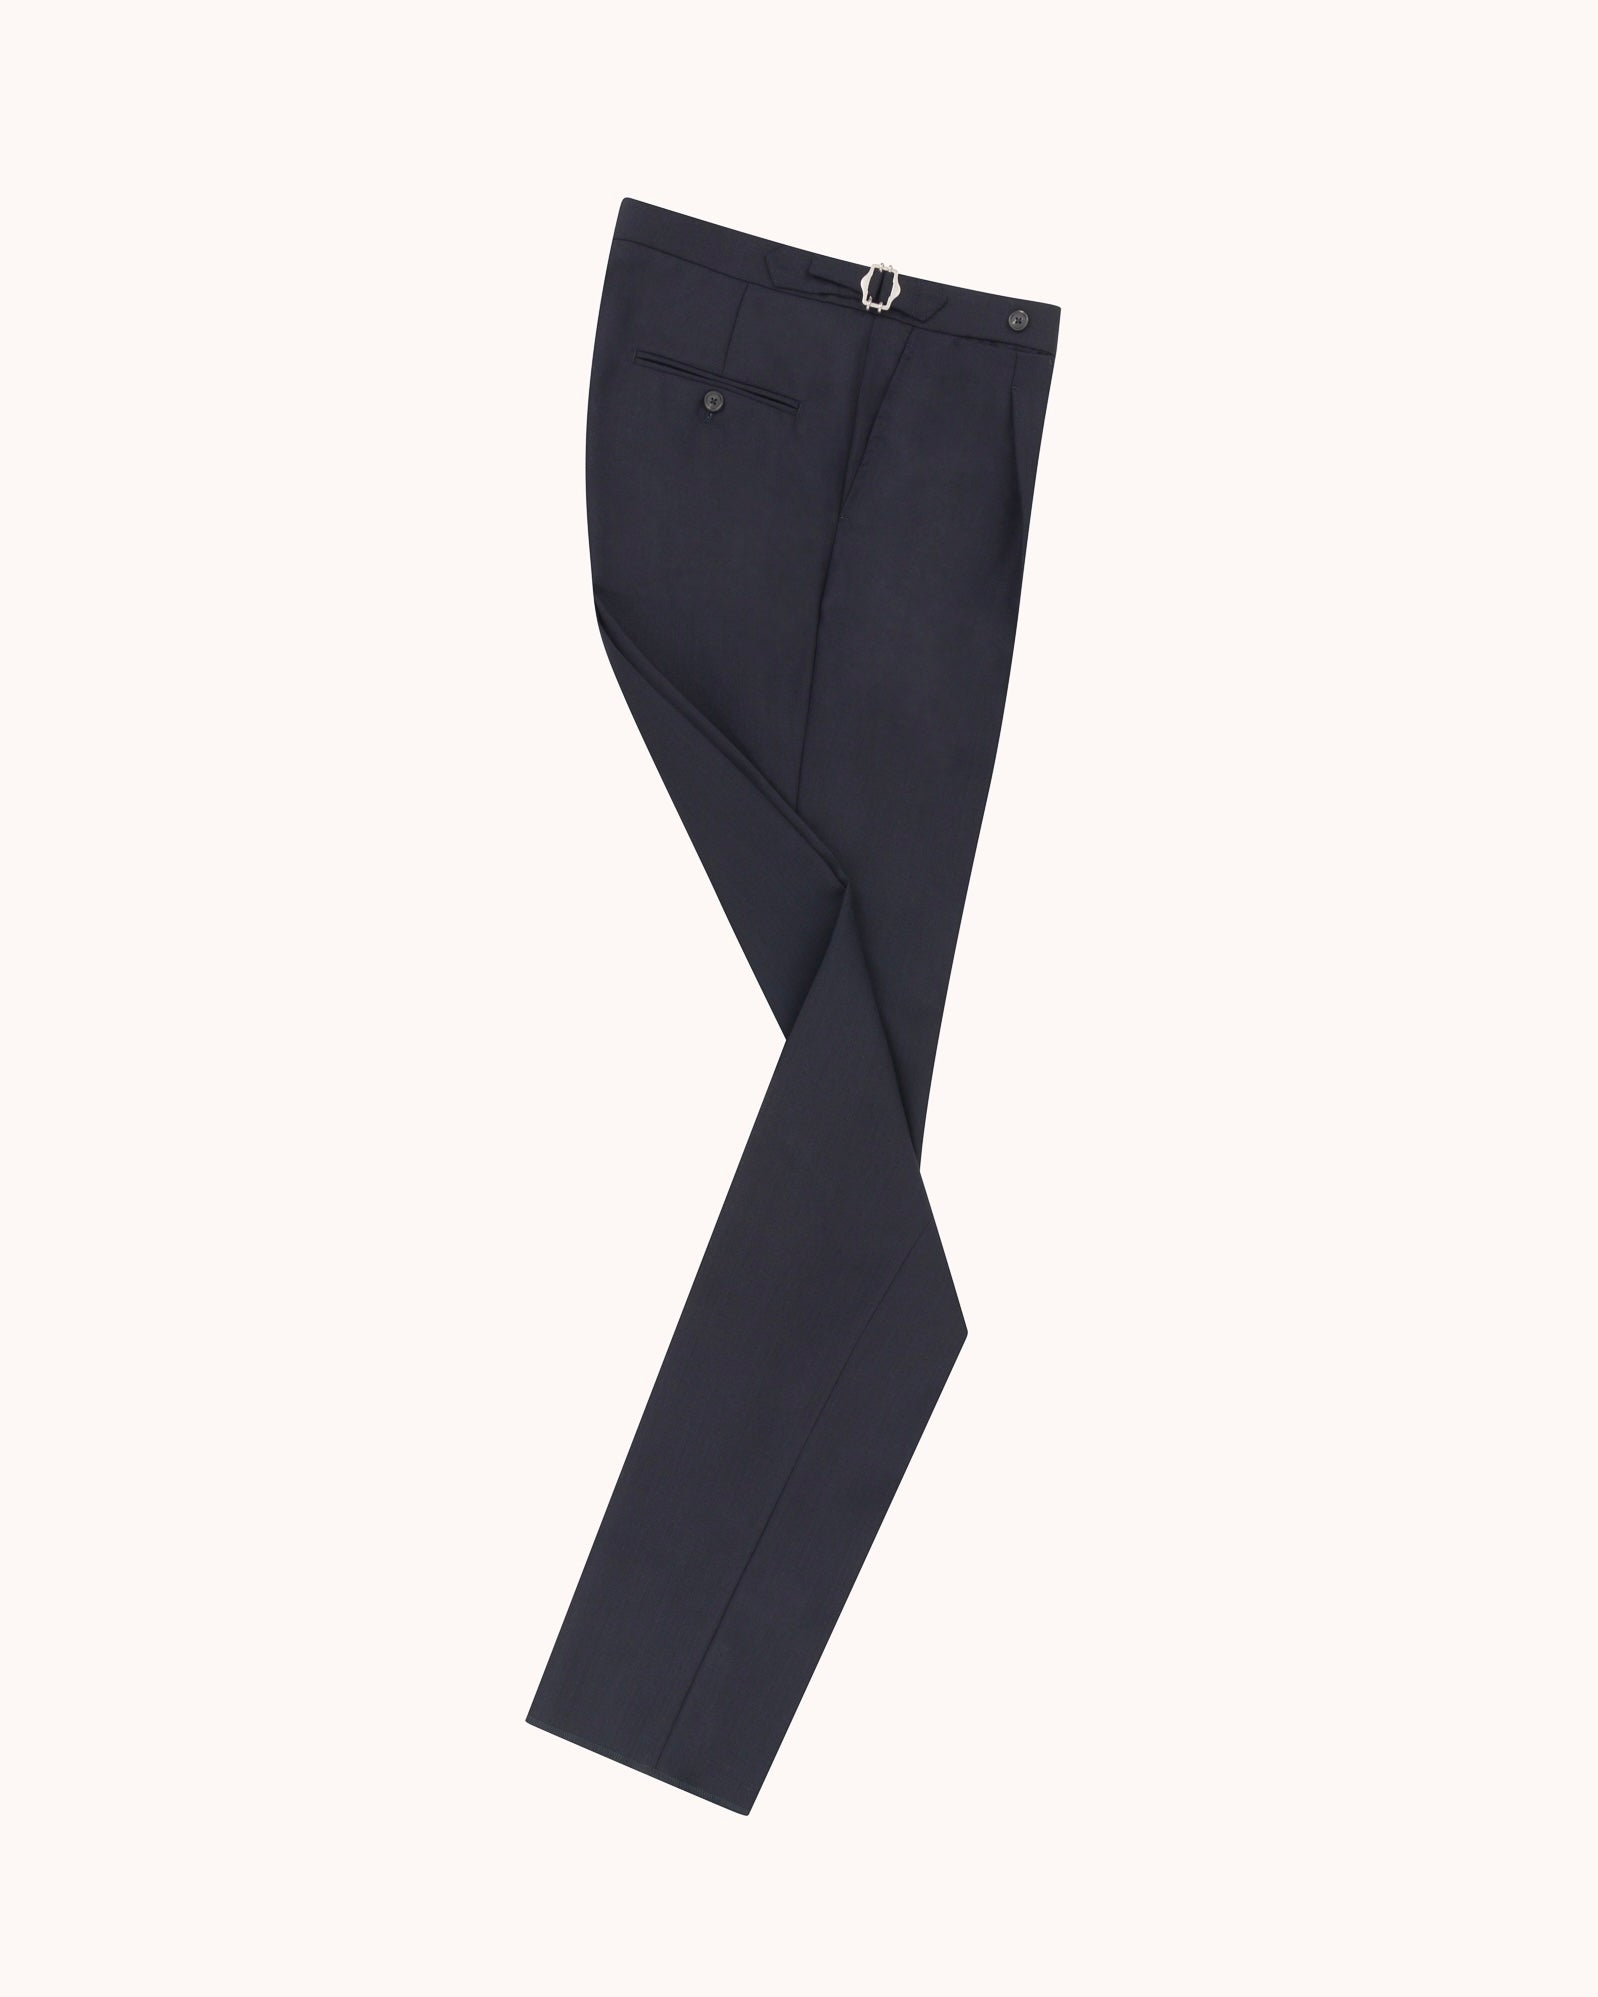 Single Pleat Trouser - Navy Tropical Wool